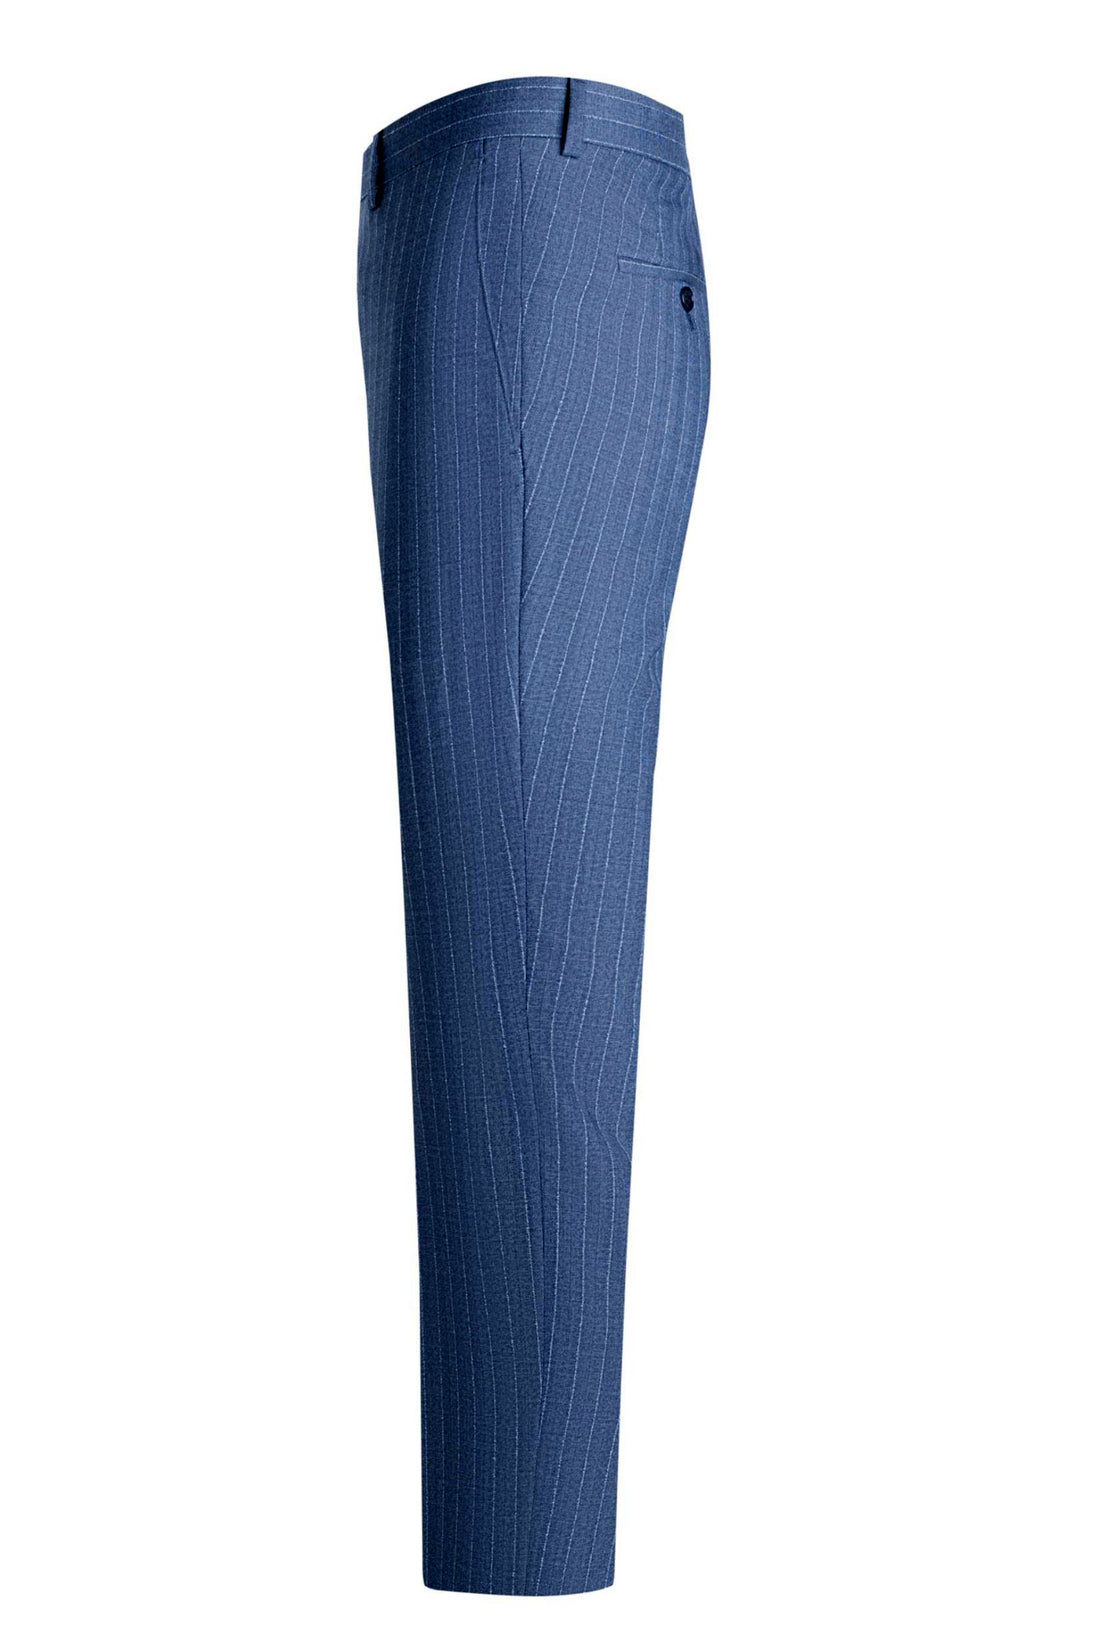 Blue Herringbone Stripe Trim Fit Suit